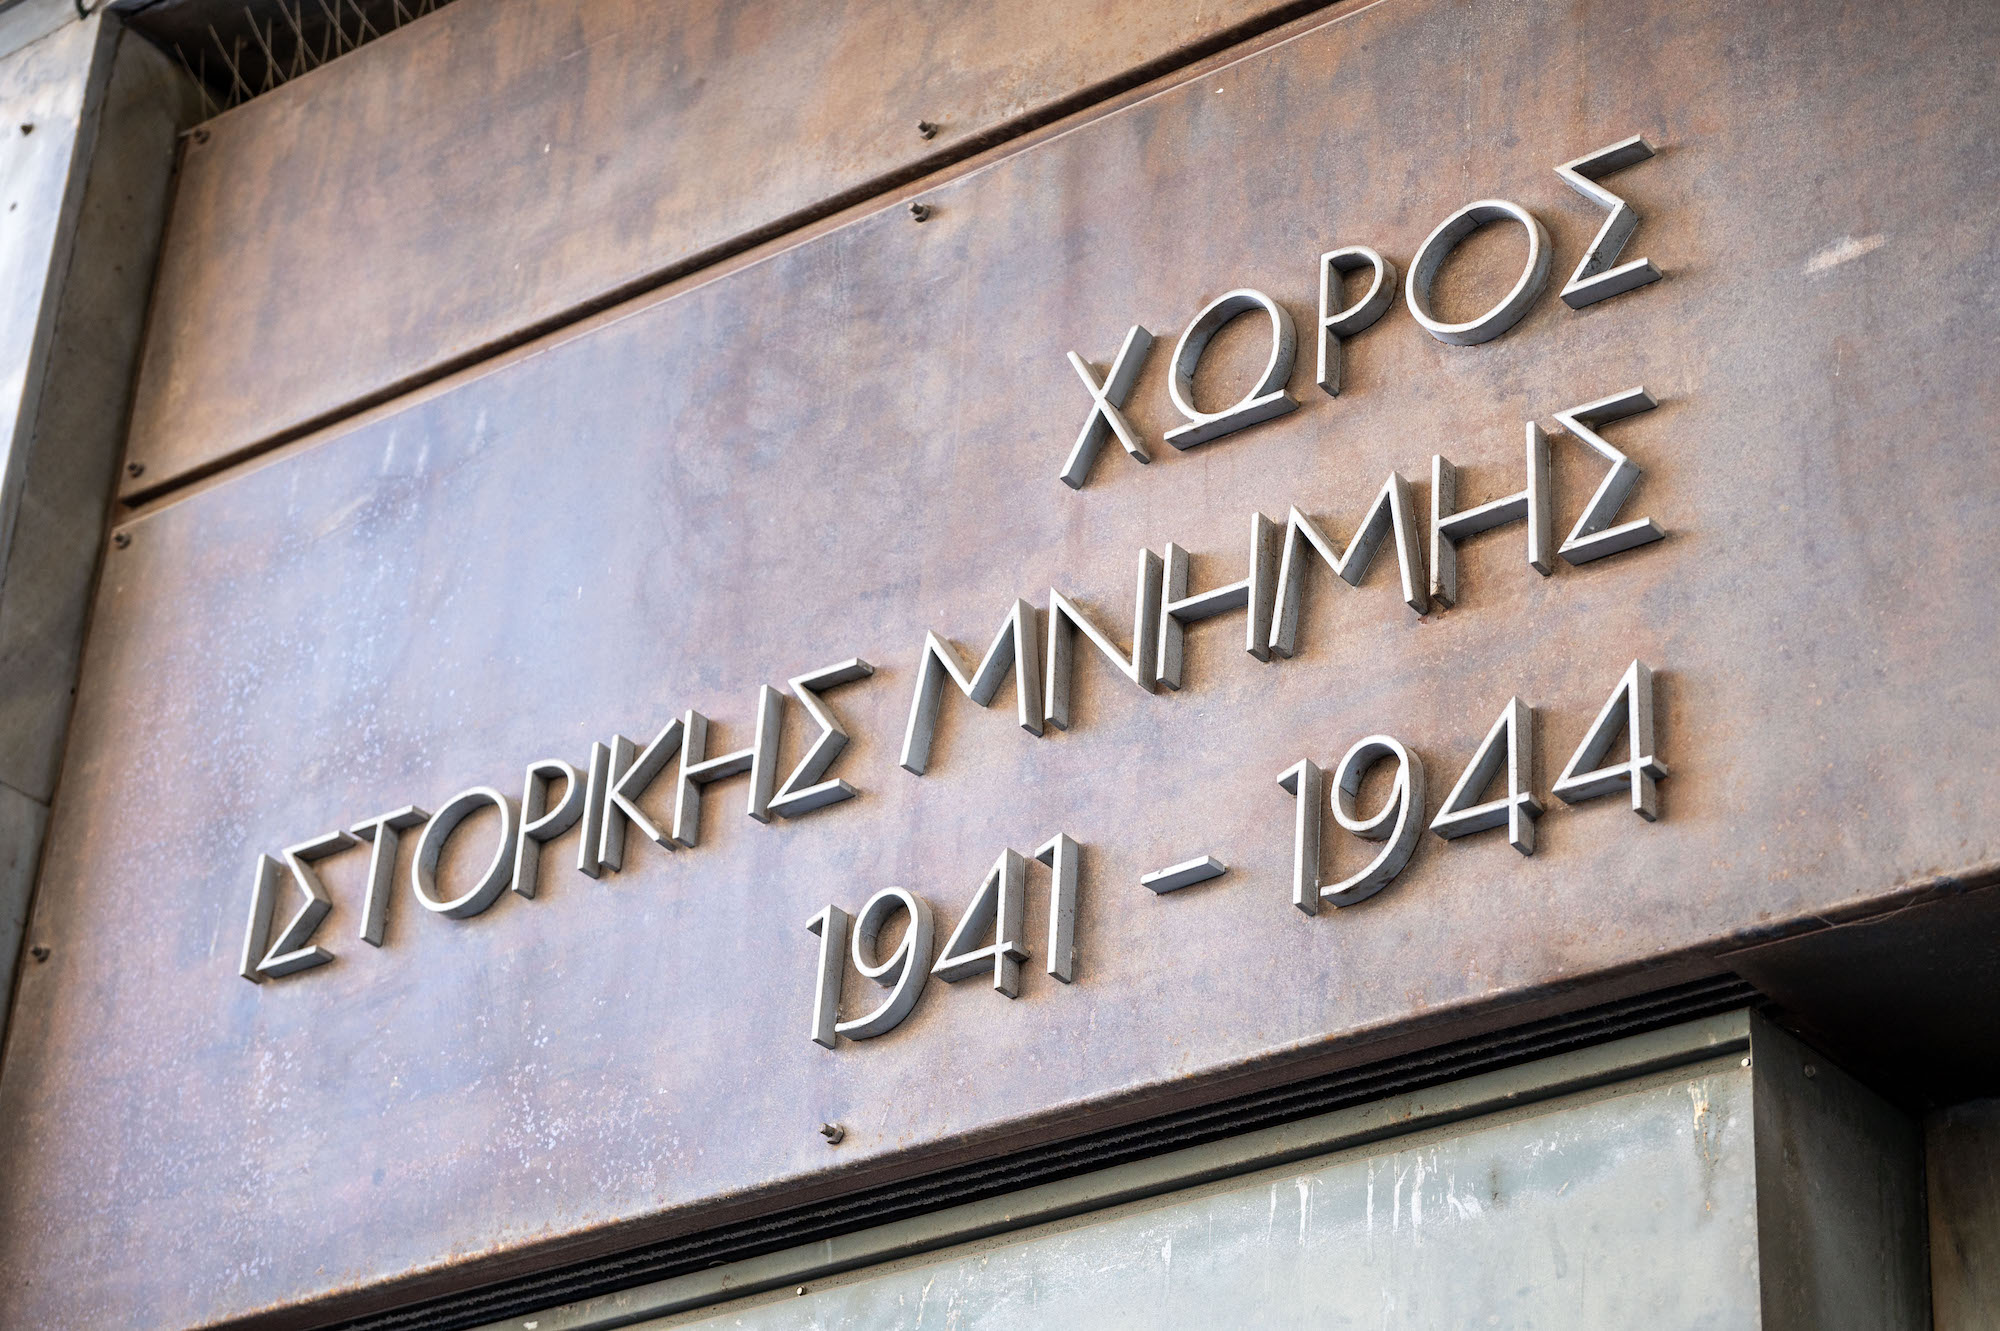 Ο Χώρος Ιστορικής Μνήμης «ΚΟΡΑΗ 4» περνάει  στο  Υπουργείο Πολιτισμού και τον Δήμο  Αθηναίων 